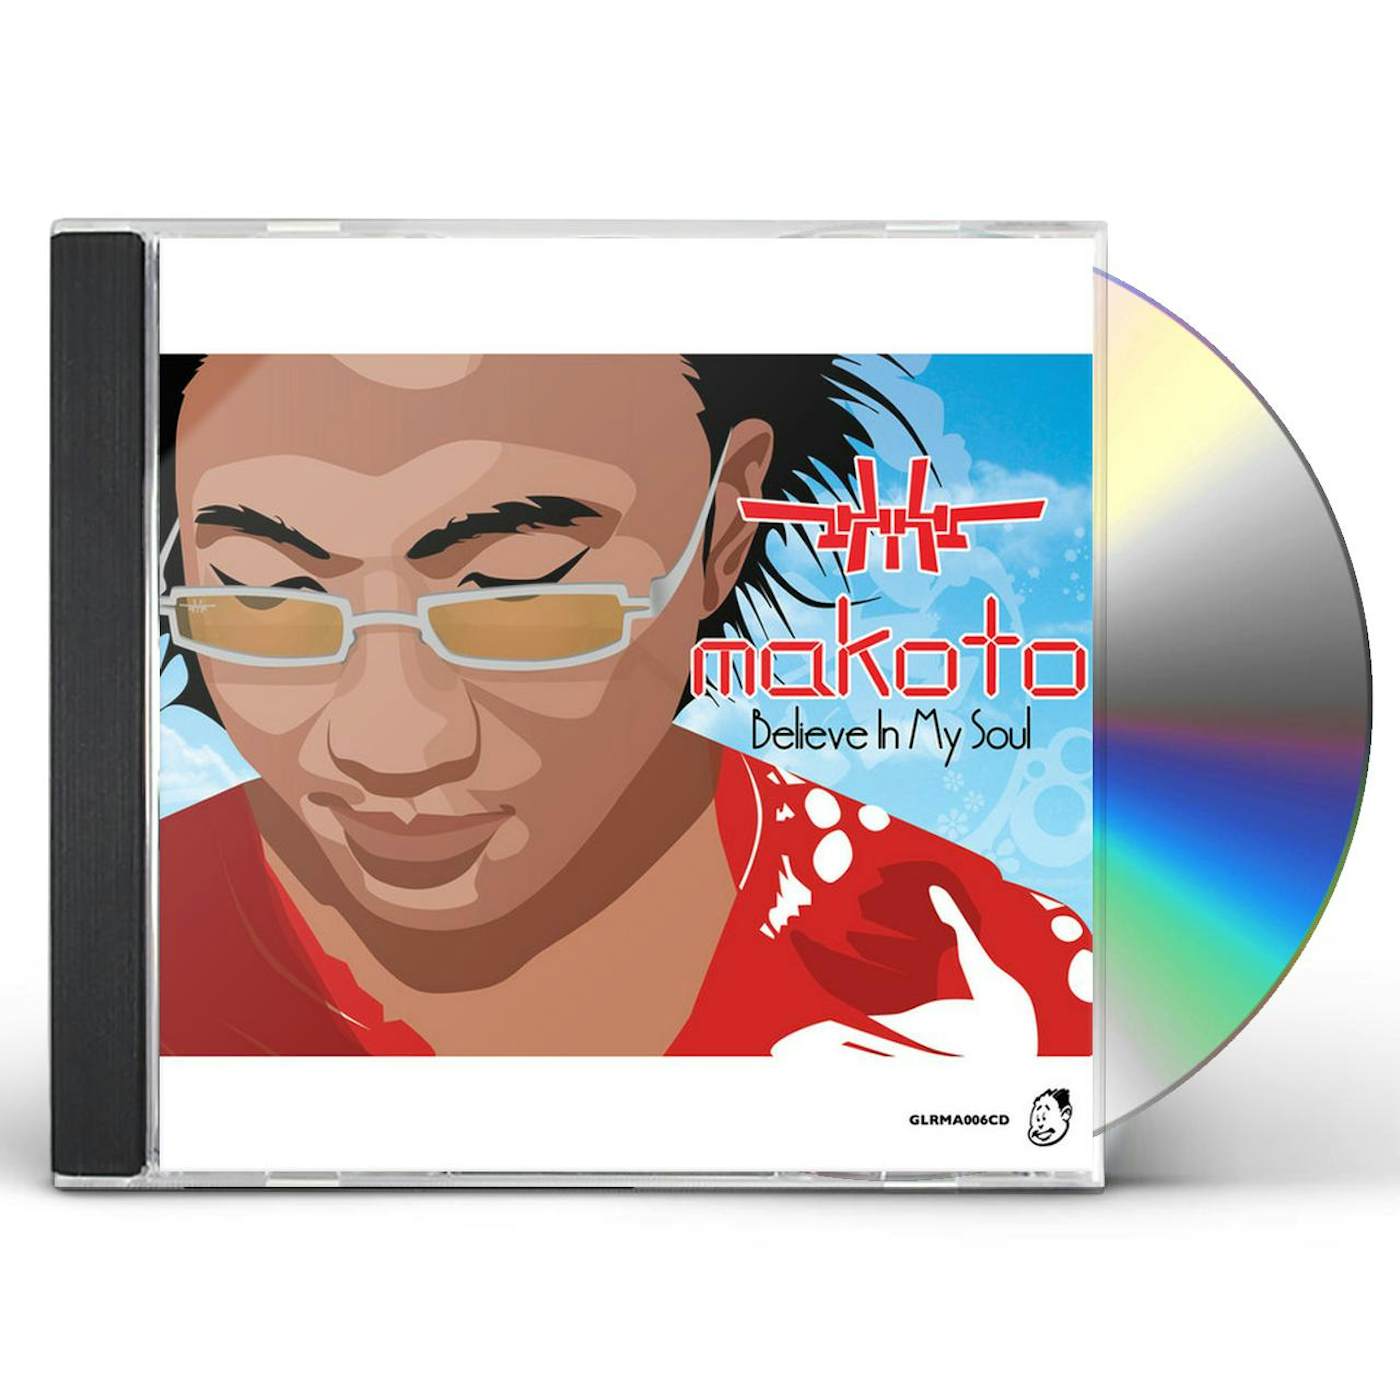 Makoto BELIEVE IN MY SOUL CD